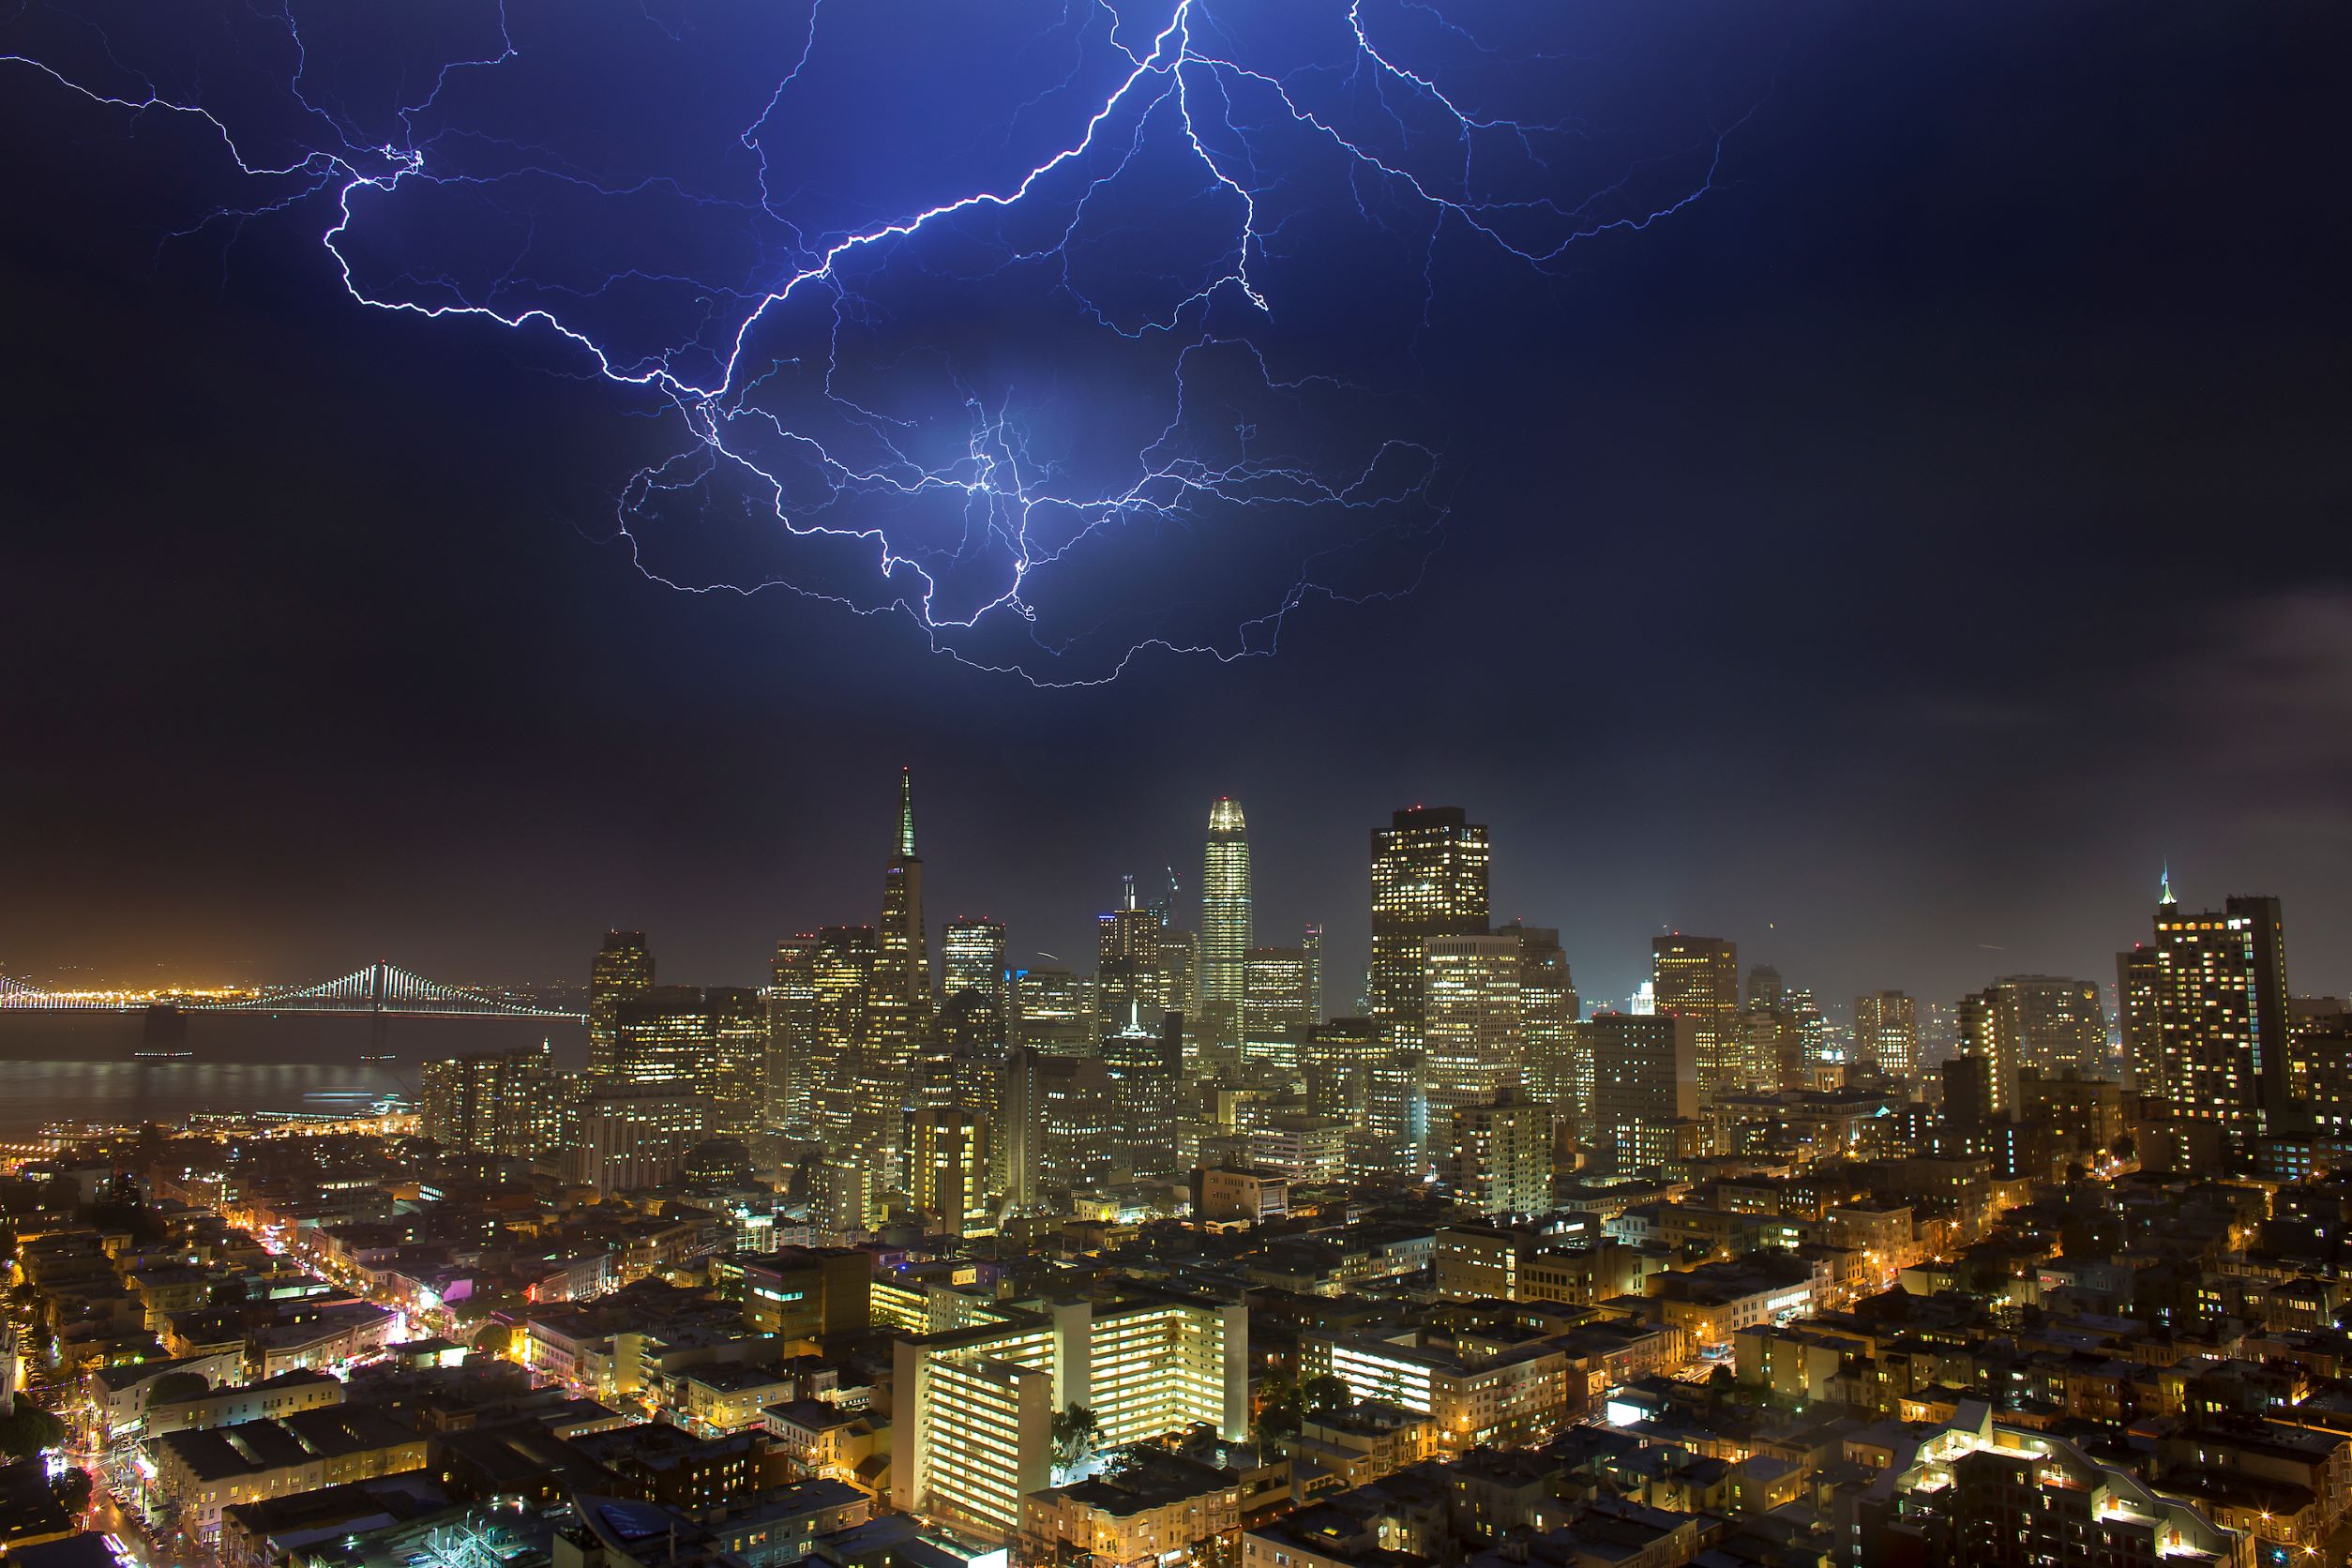 San Francisco storm